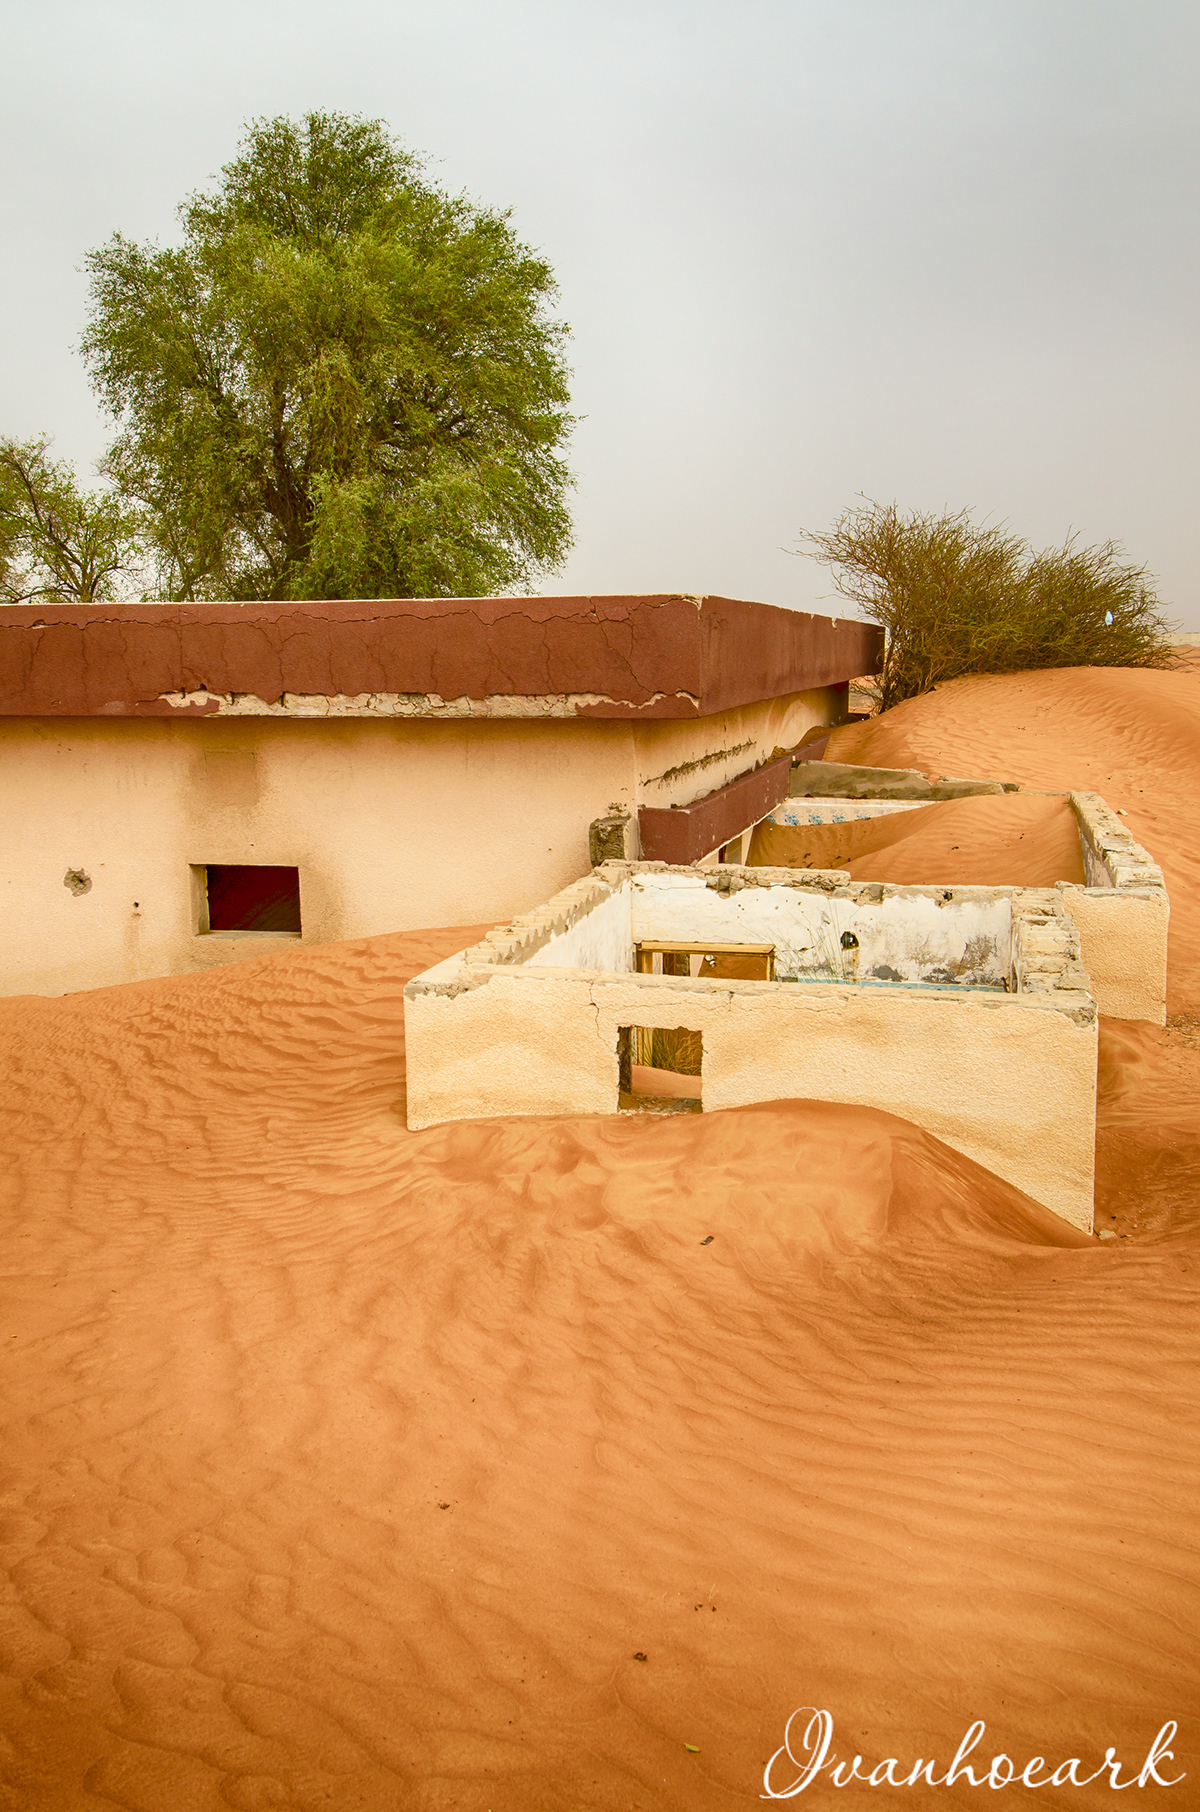 desert digital house landscapes Photography  village